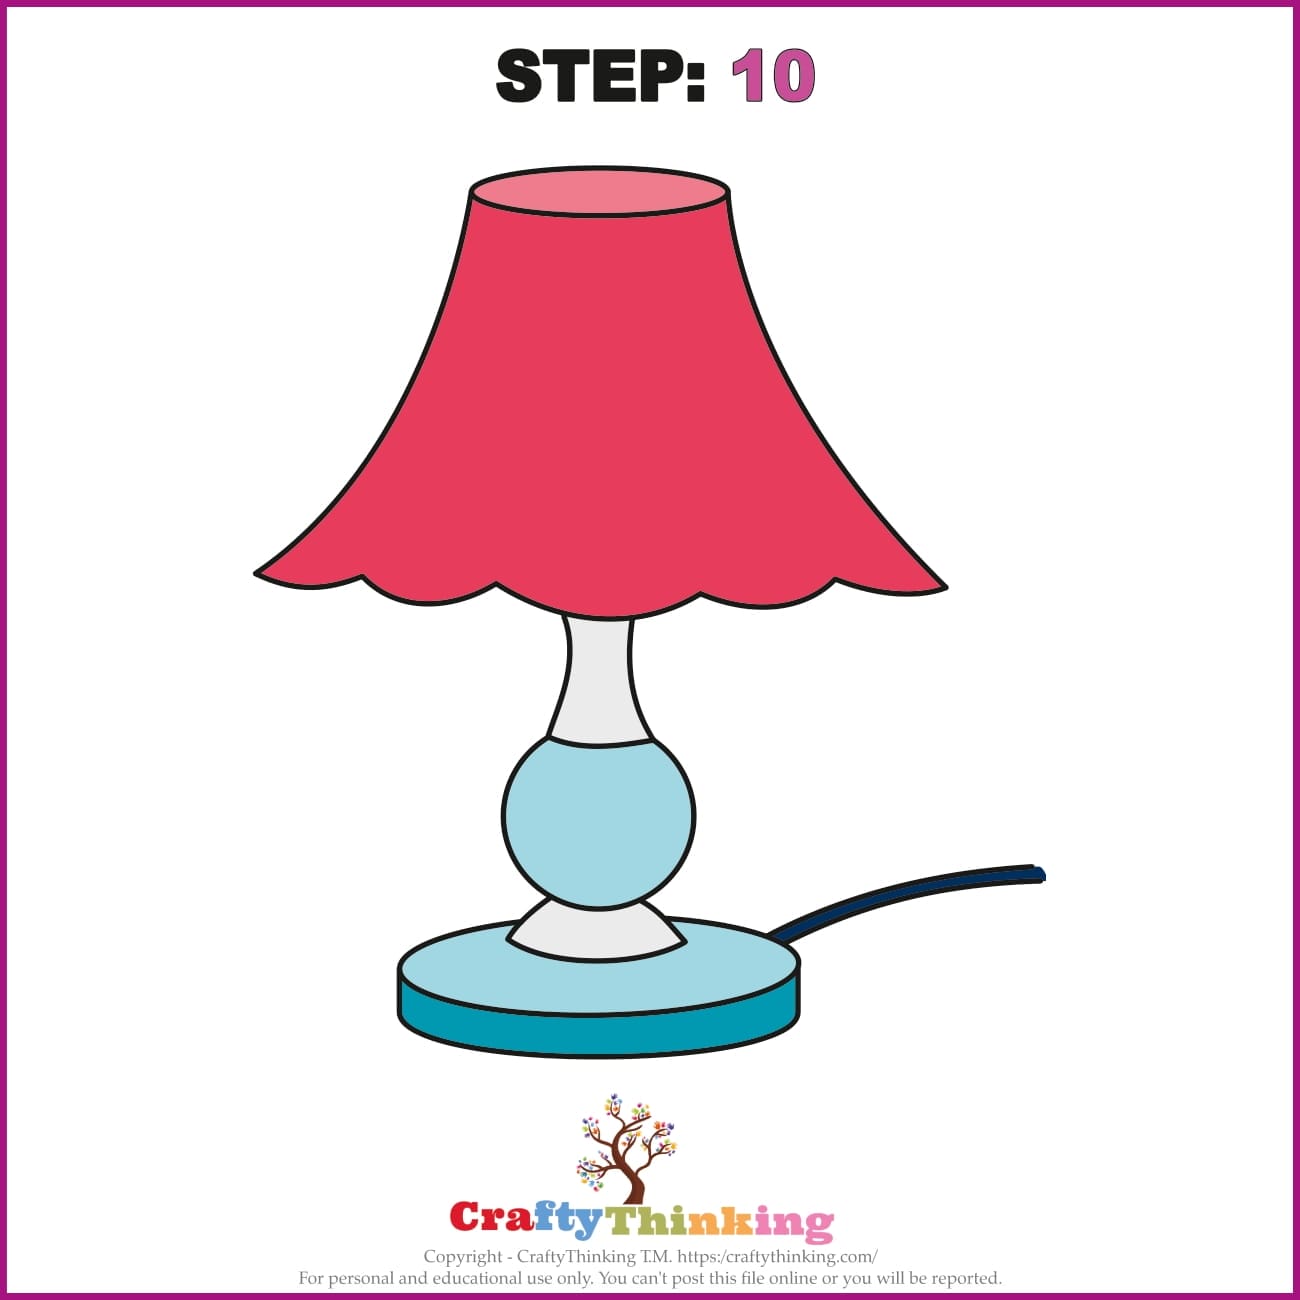 How to draw lamp shade/lamp shade drawing,लैंप शेड का सरल चित्र बनाना सीखें  - YouTube